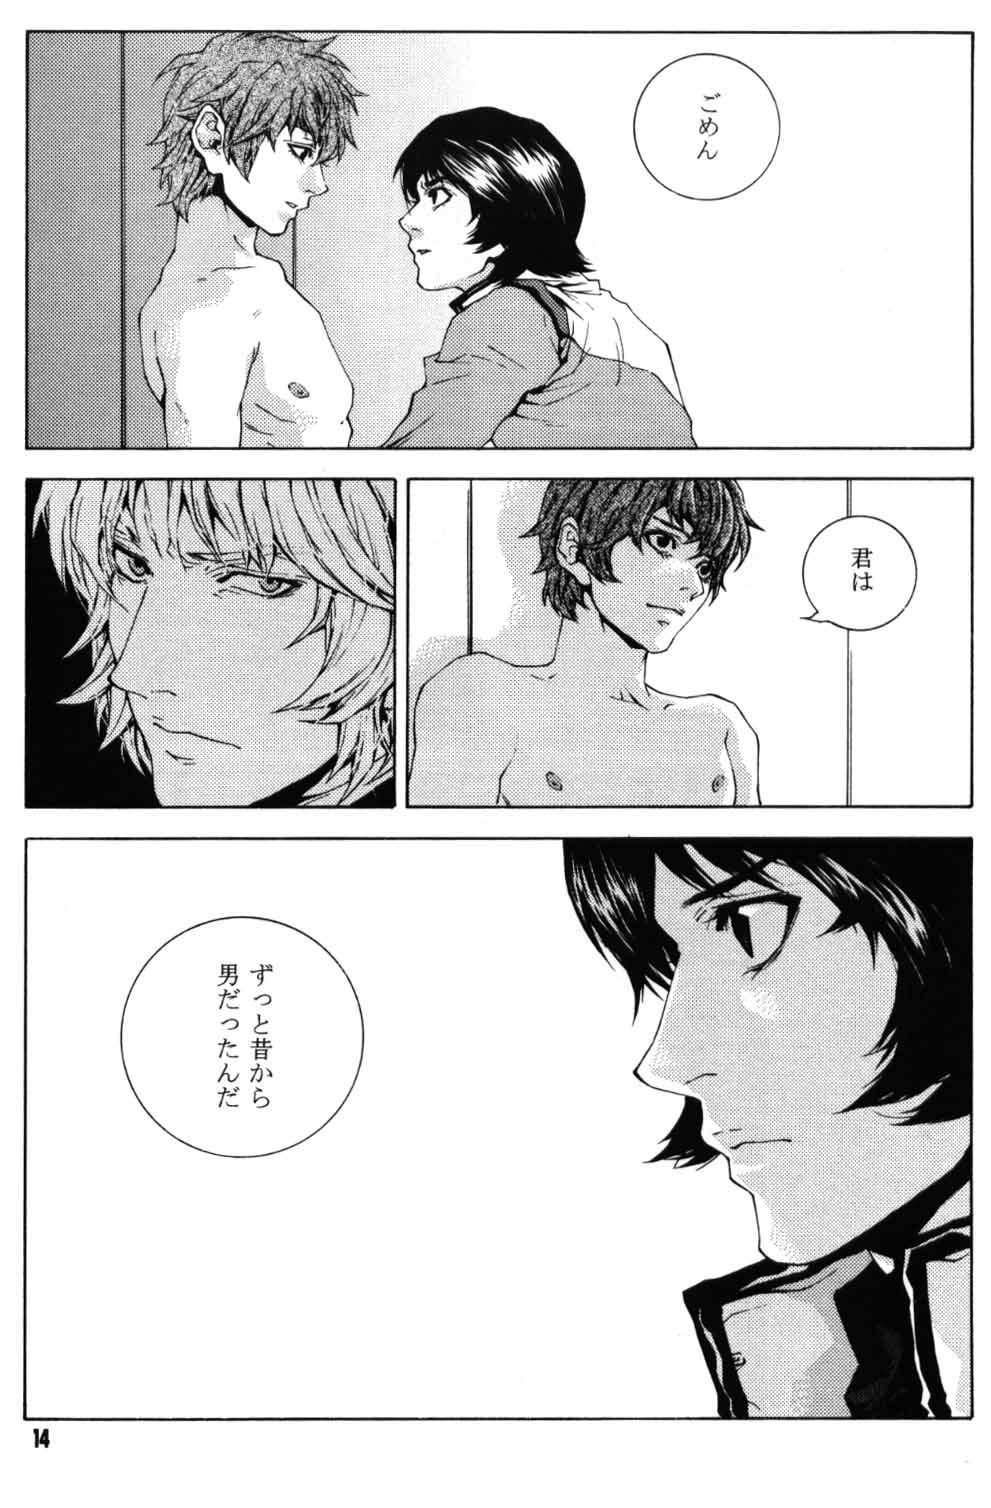 [APART (Yanagisawa Yukio)] Koi no you na Bakemono ga. (Zeta Gundam) page 12 full